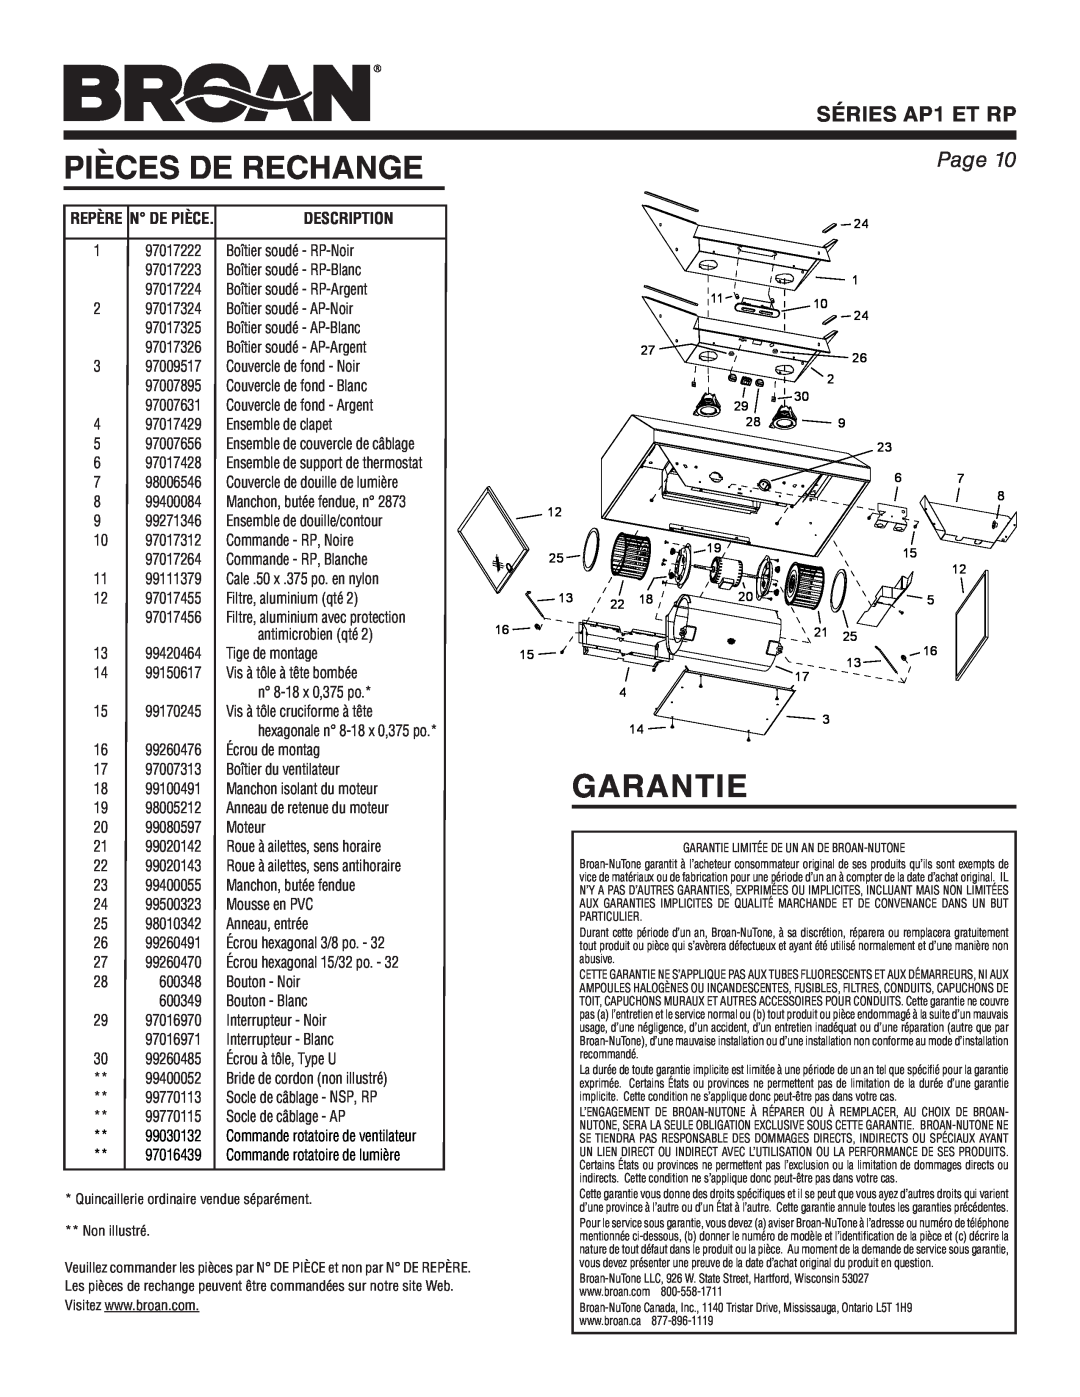 Broan warranty Pièces De Rechange, Garantie, Description, SÉRIES AP1 ET RP, Page 